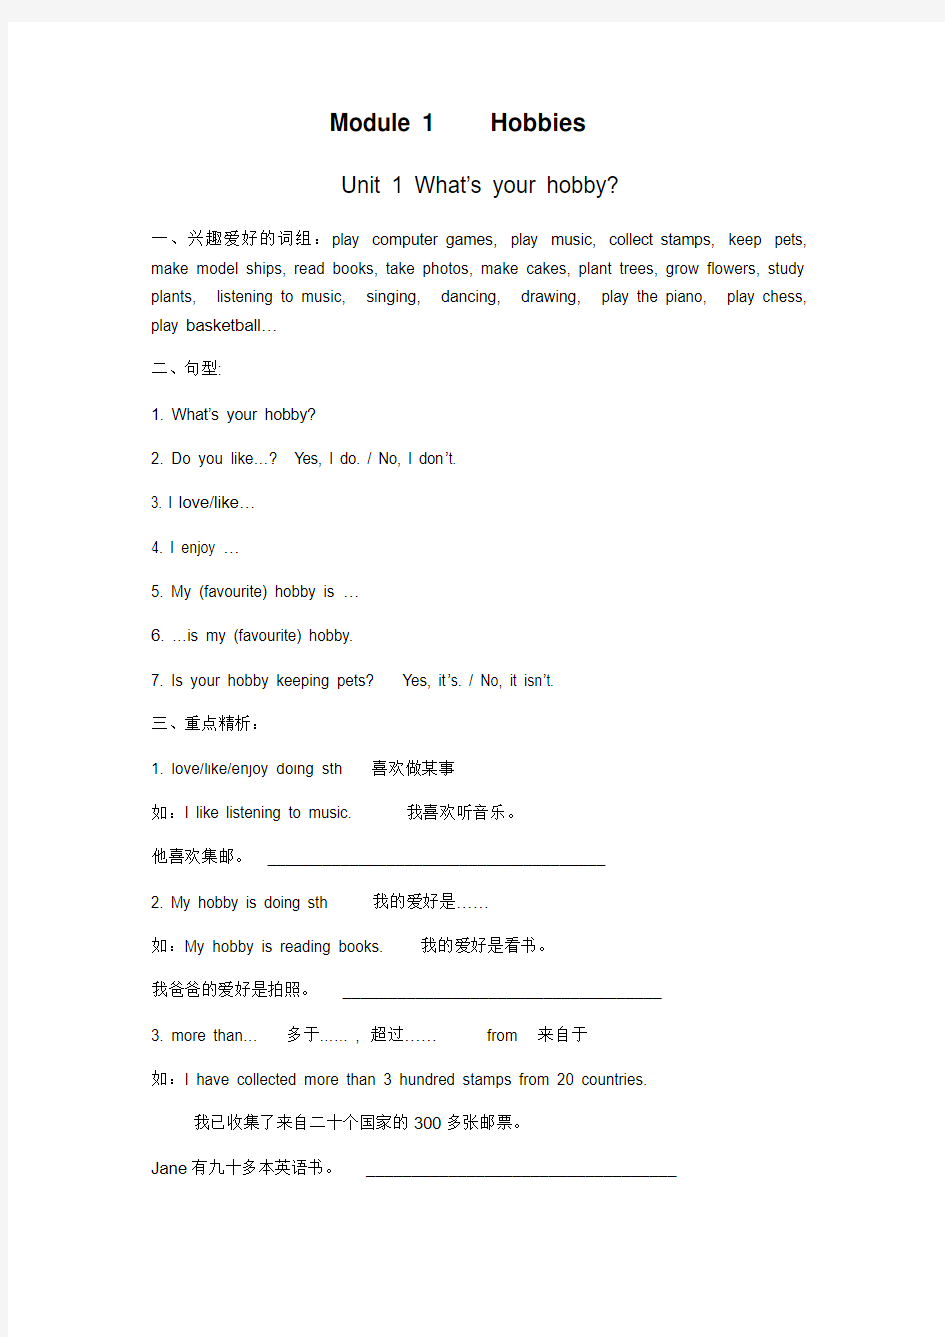 广州版小学五年级英语上册1-12单元知识点归纳与习题